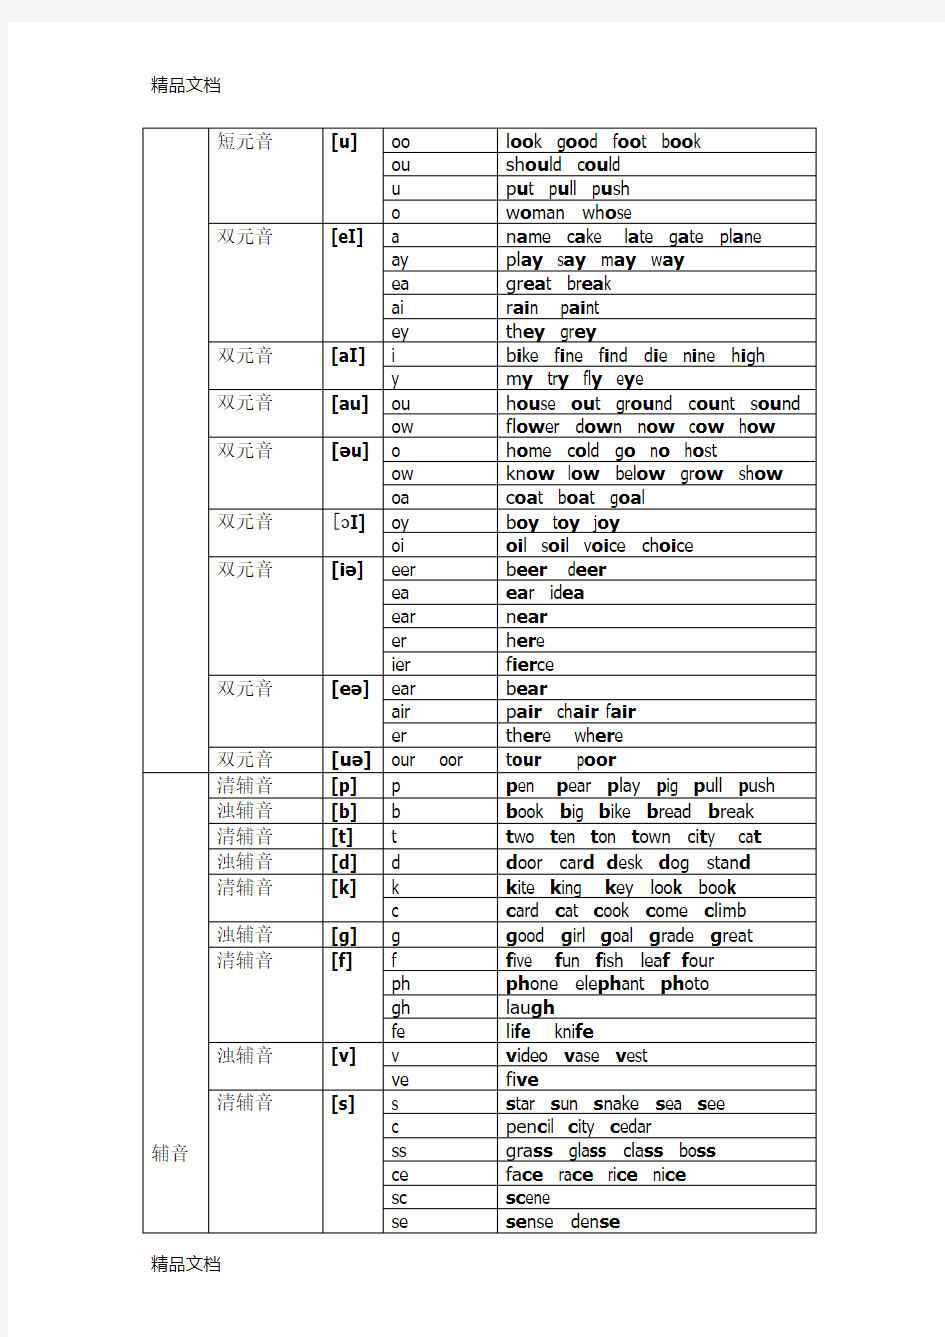 英语48个音标字母及字母组合发音对照表学习资料